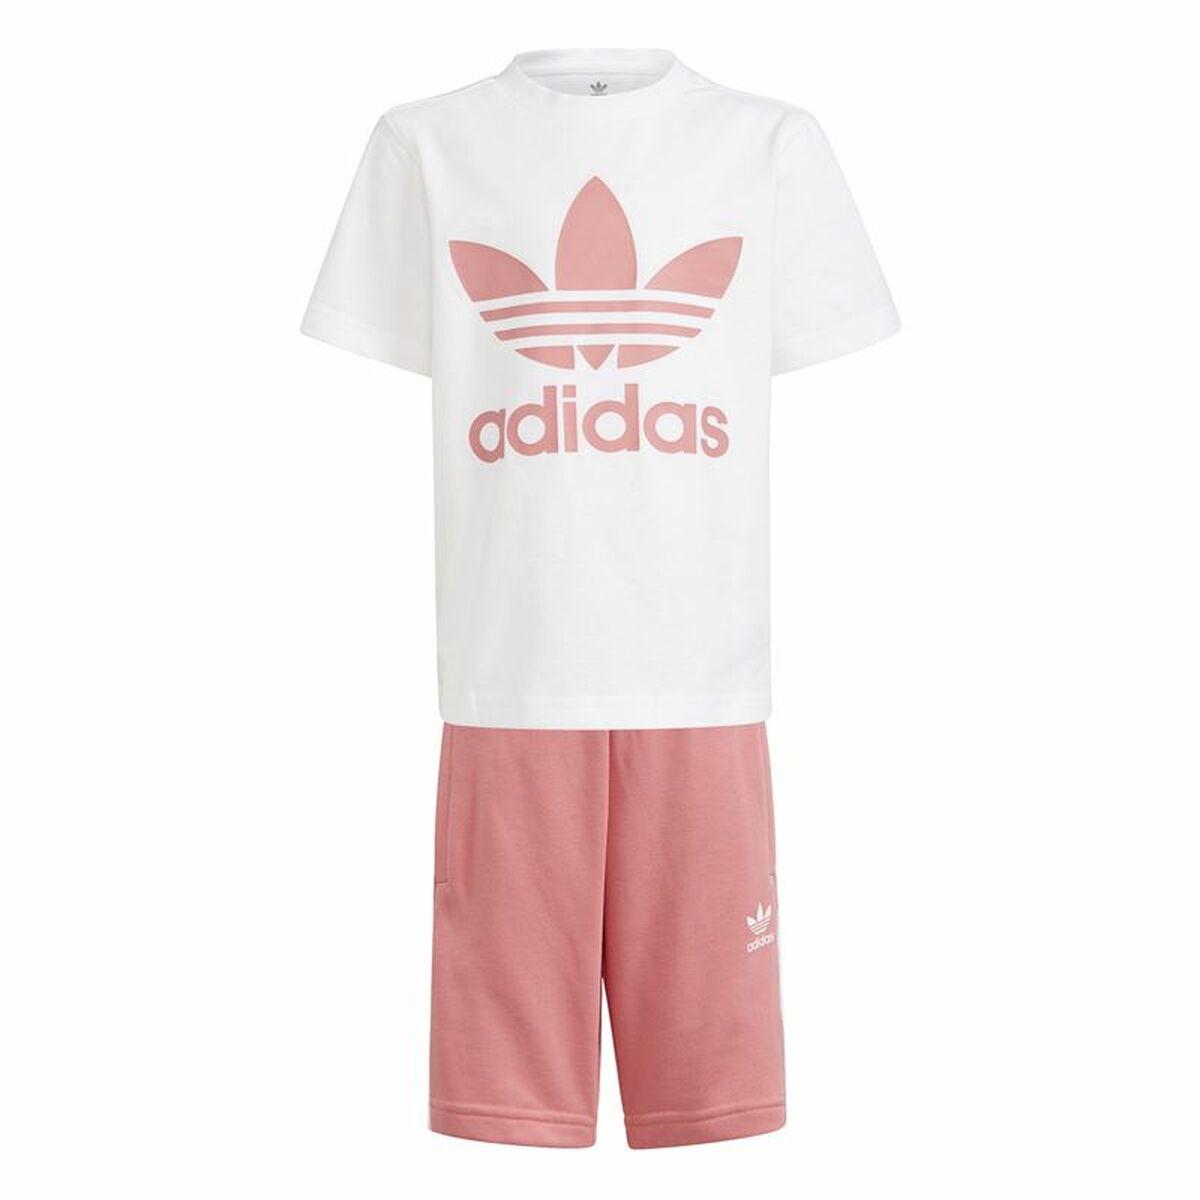 Køb Sportstøj til Børn Adidas Trifolio Hvid 3-4 år fra